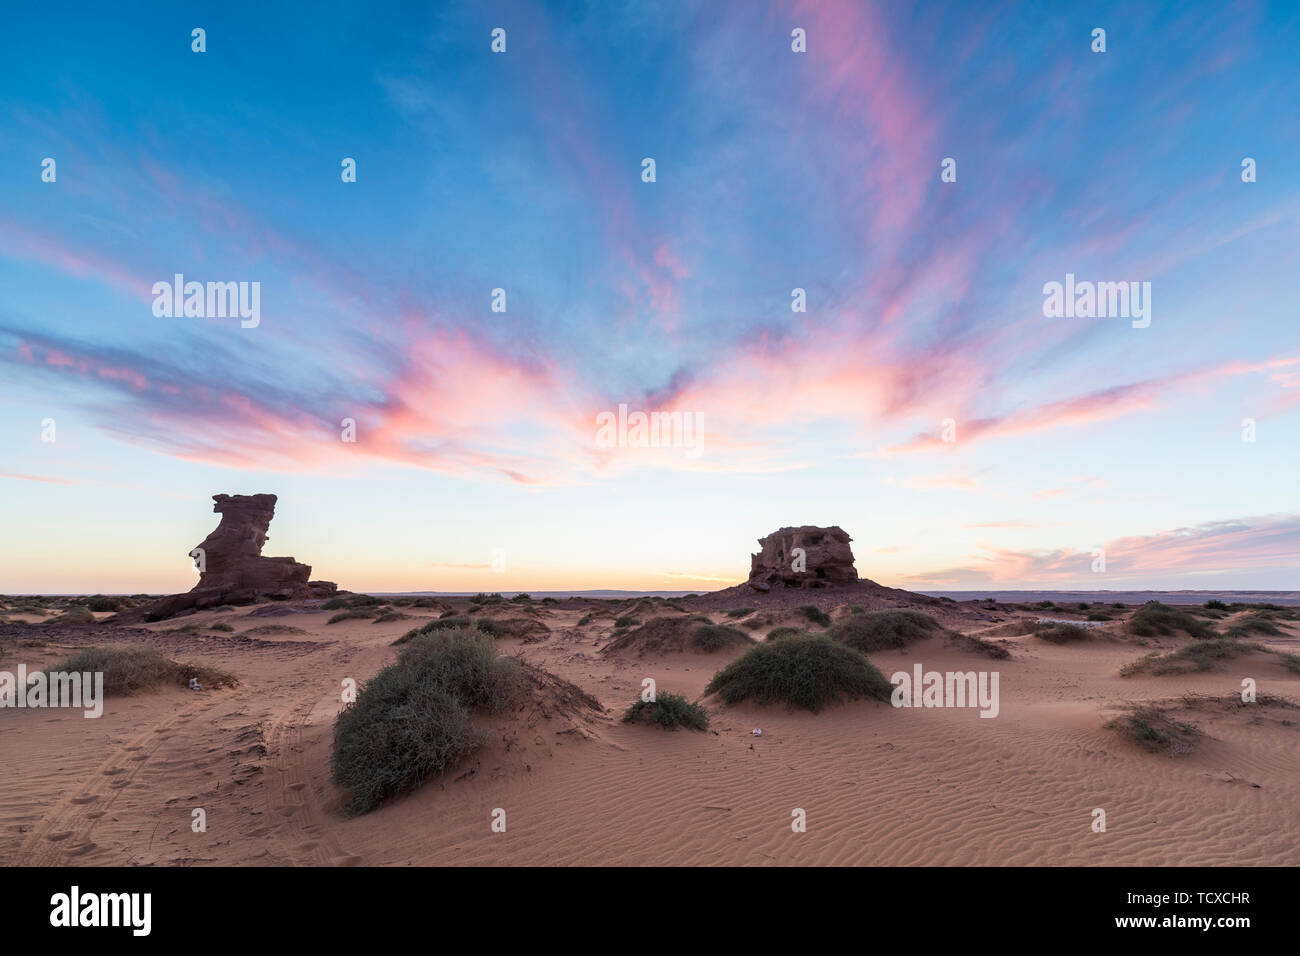 Coucher du soleil dans le désert du Sahara, près de Timimoun, dans l'ouest de l'Algérie, l'Afrique du Nord, Afrique Banque D'Images